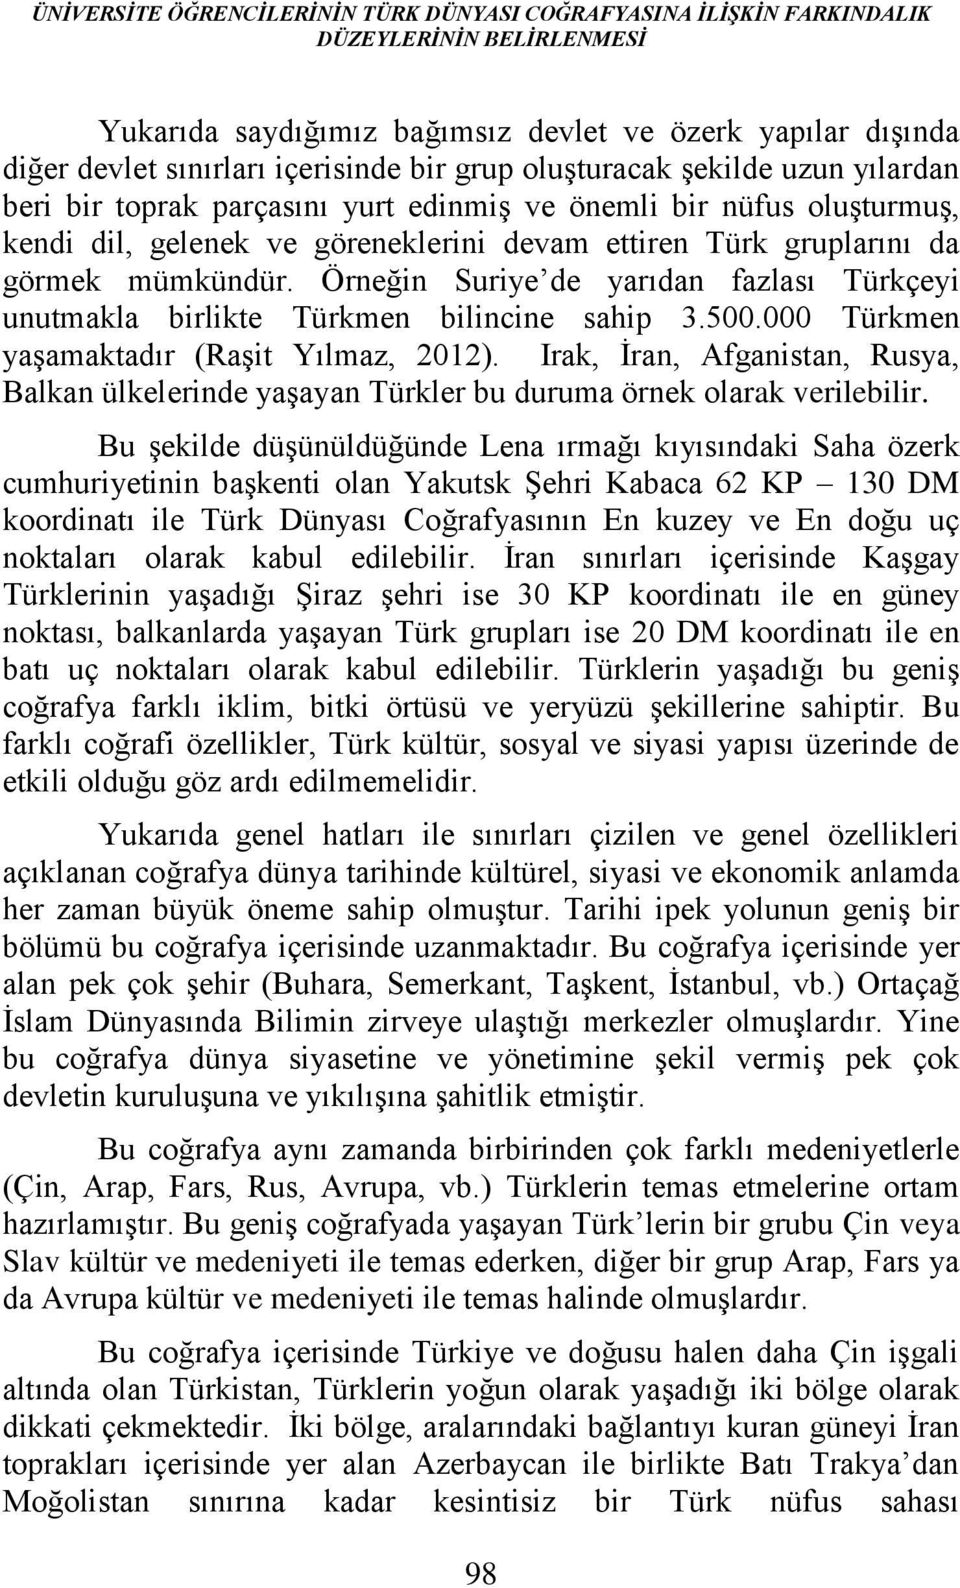 Örneğin Suriye de yarıdan fazlası Türkçeyi unutmakla birlikte Türkmen bilincine sahip 3.500.000 Türkmen yaşamaktadır (Raşit Yılmaz, 2012).